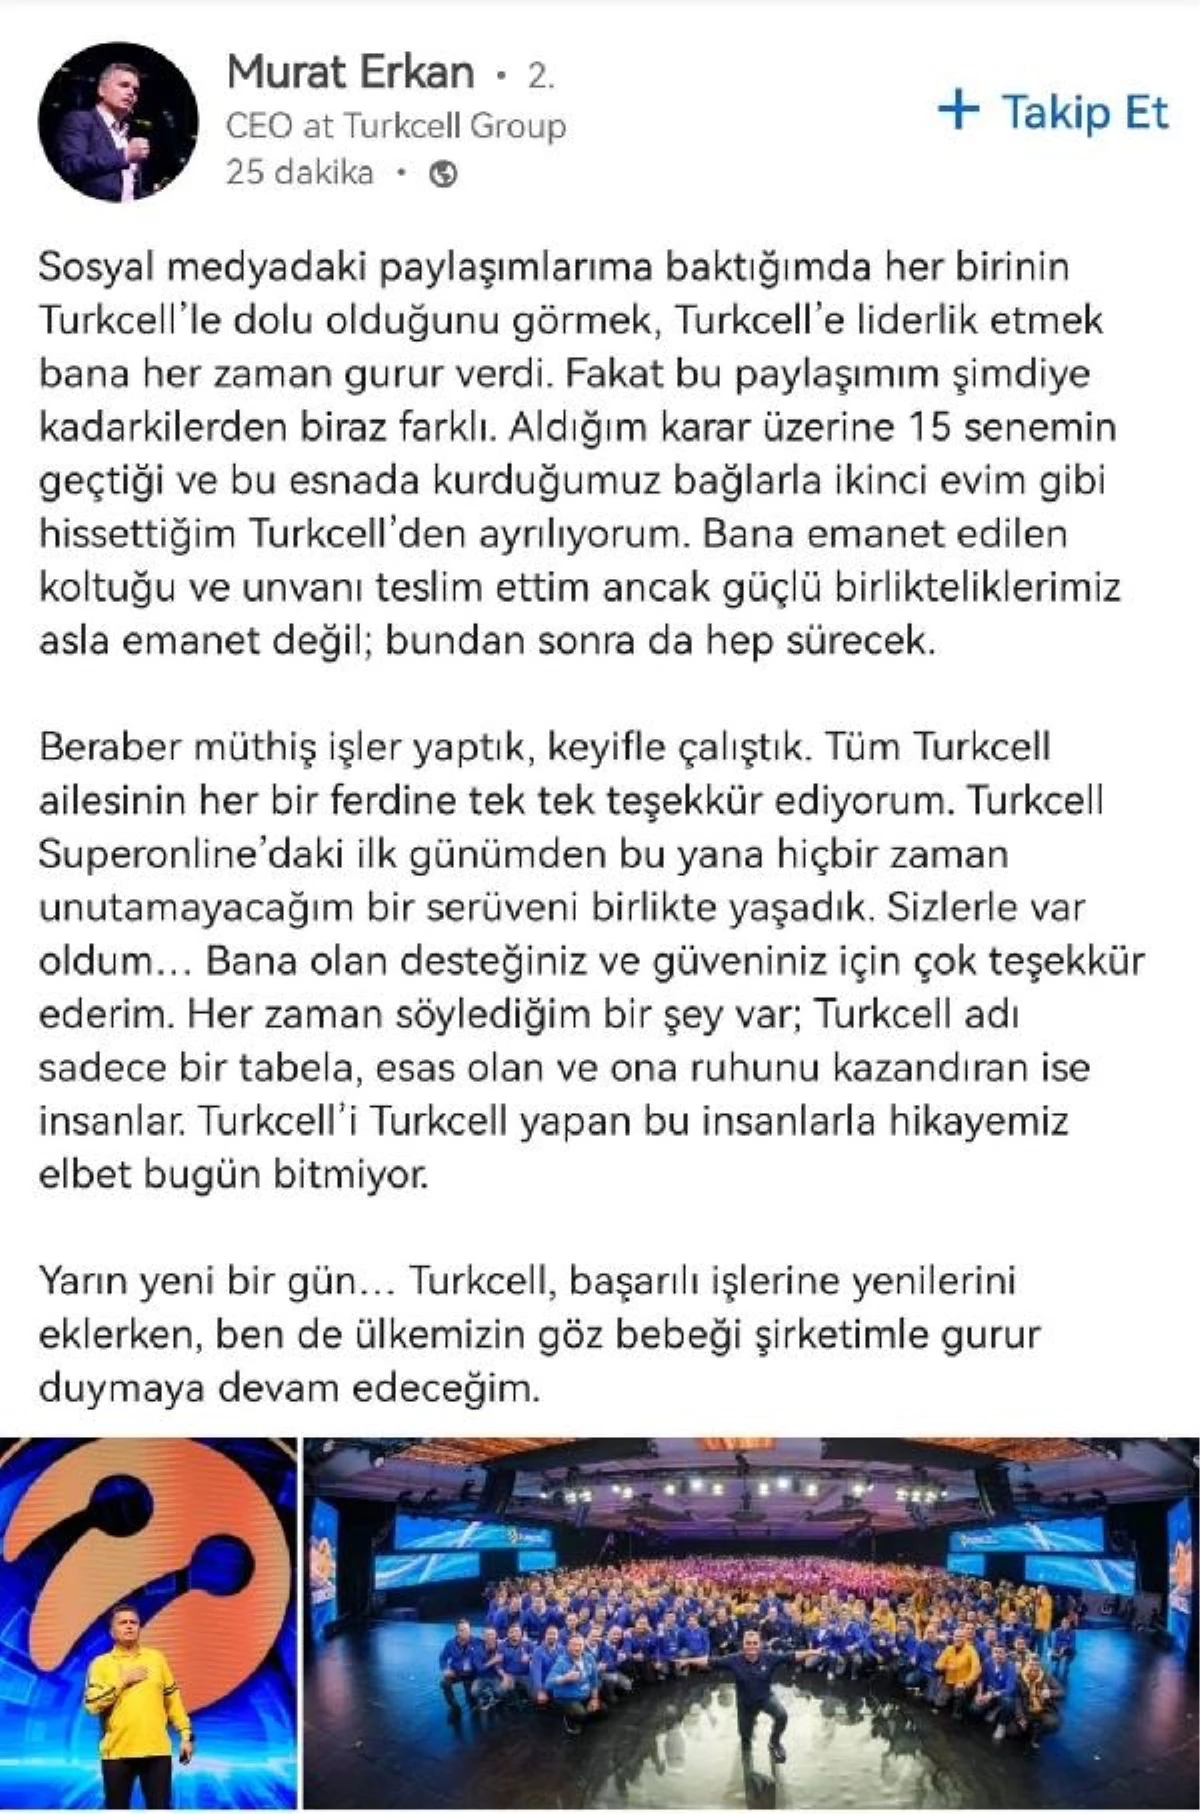 Turkcell Genel Müdürü Murat Erkan Görevinden Ayrıldı